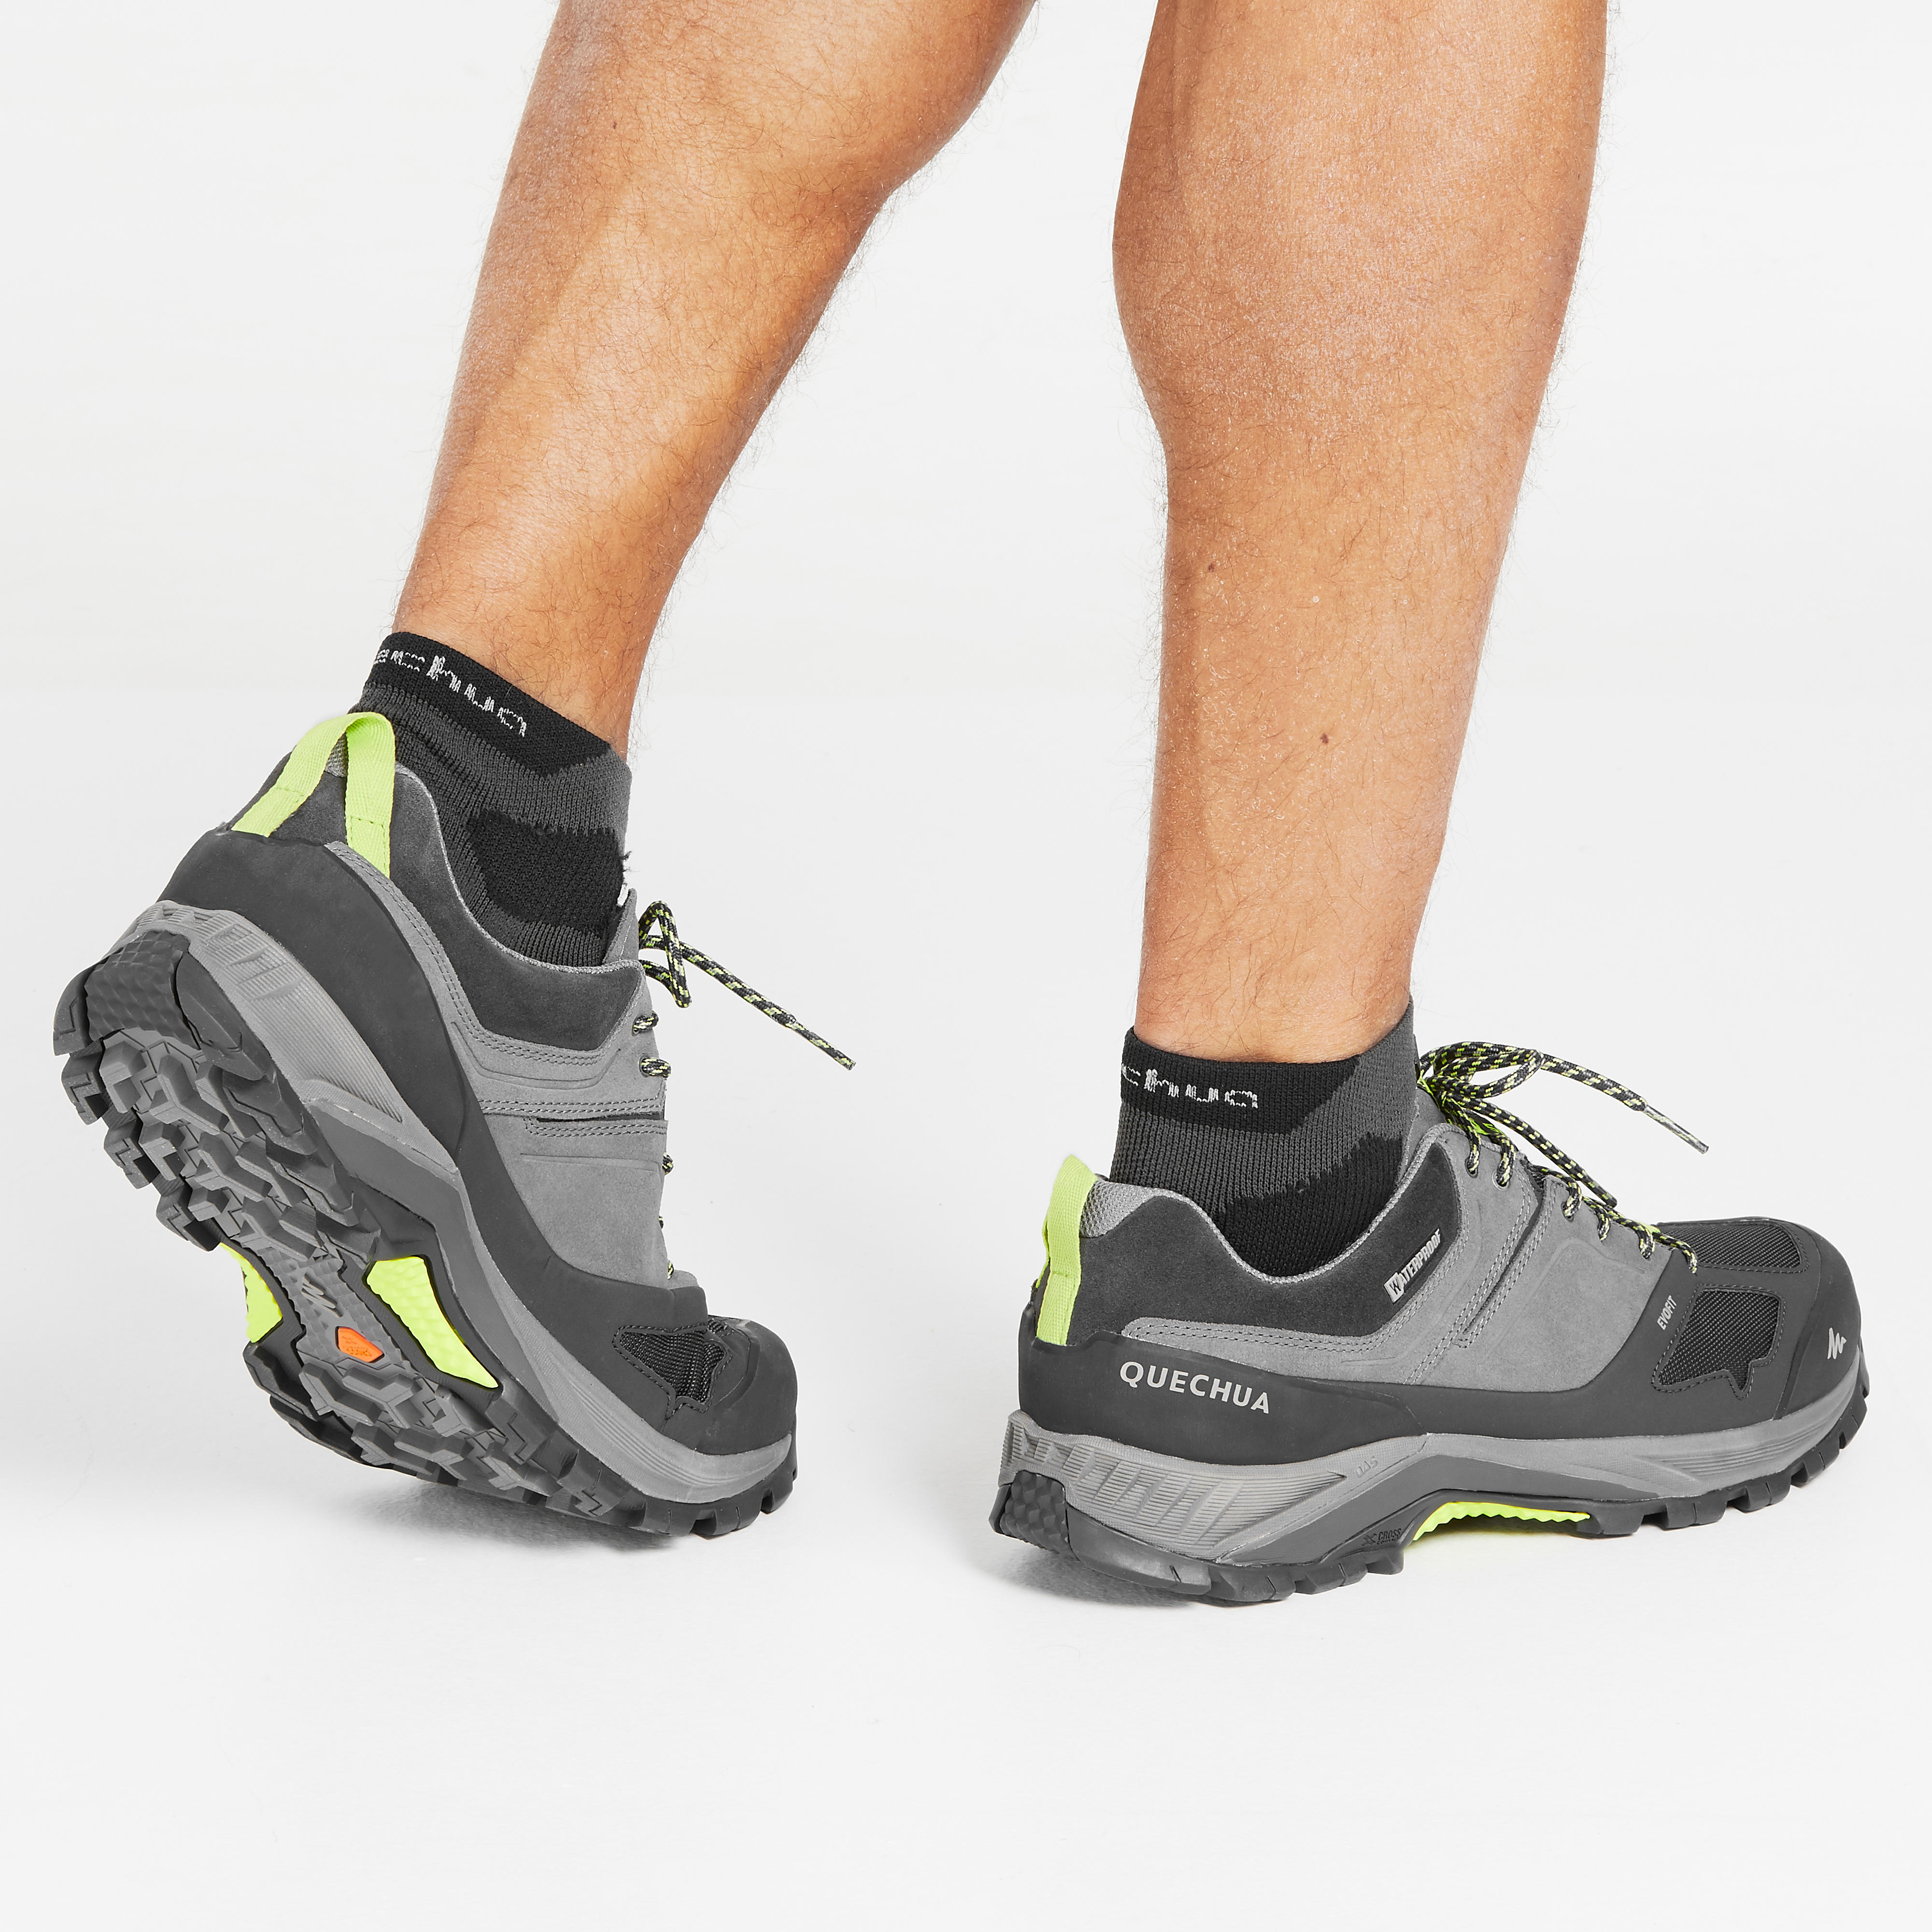 Men's waterproof mountain hiking shoes 